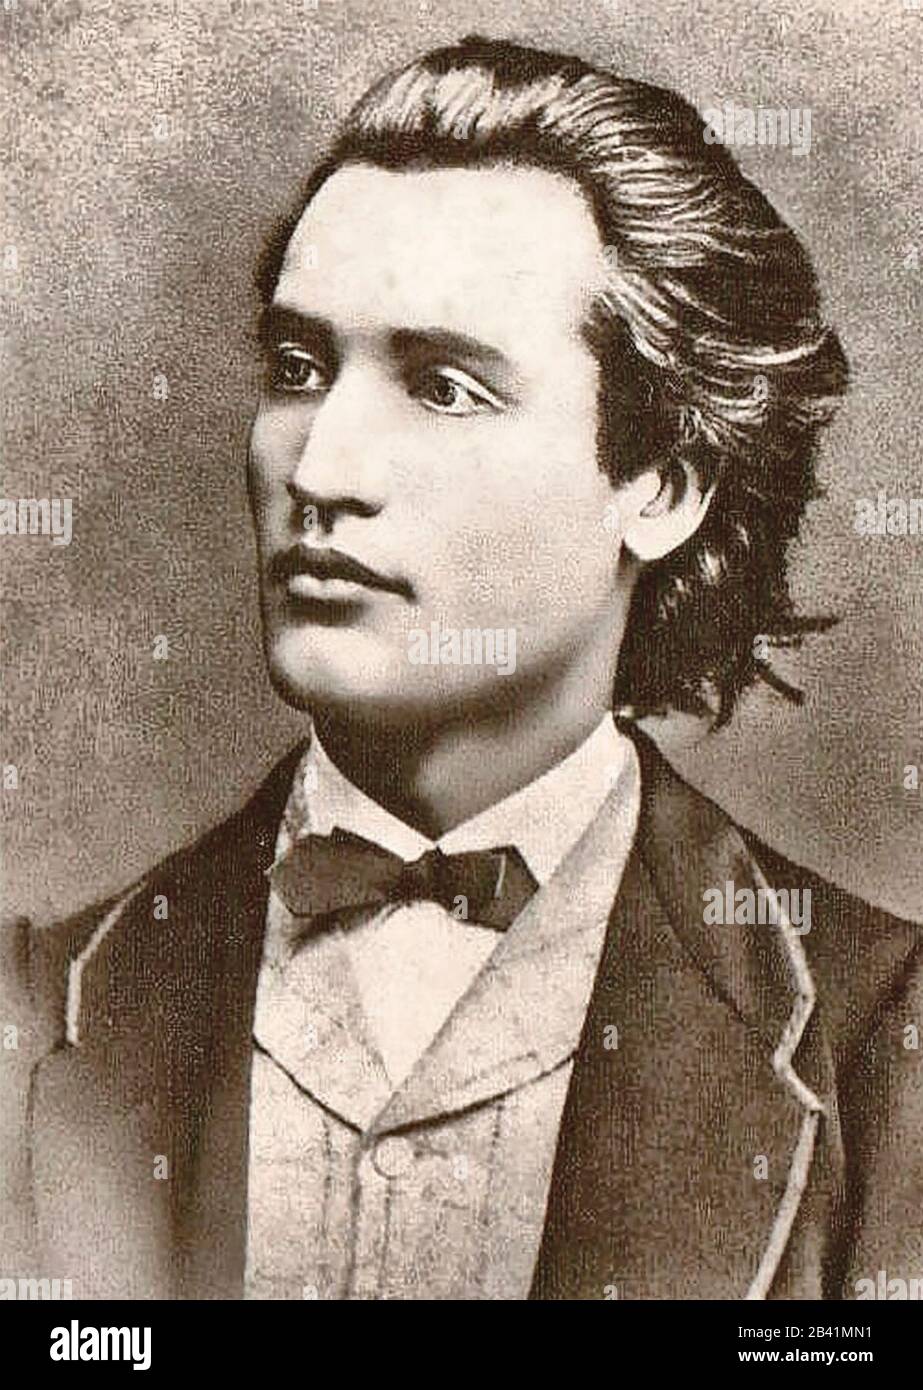 Porträt von Mihai Eminescu - Foto von Jan Tomas (1841-1912) in Prag, 1869 Stockfoto